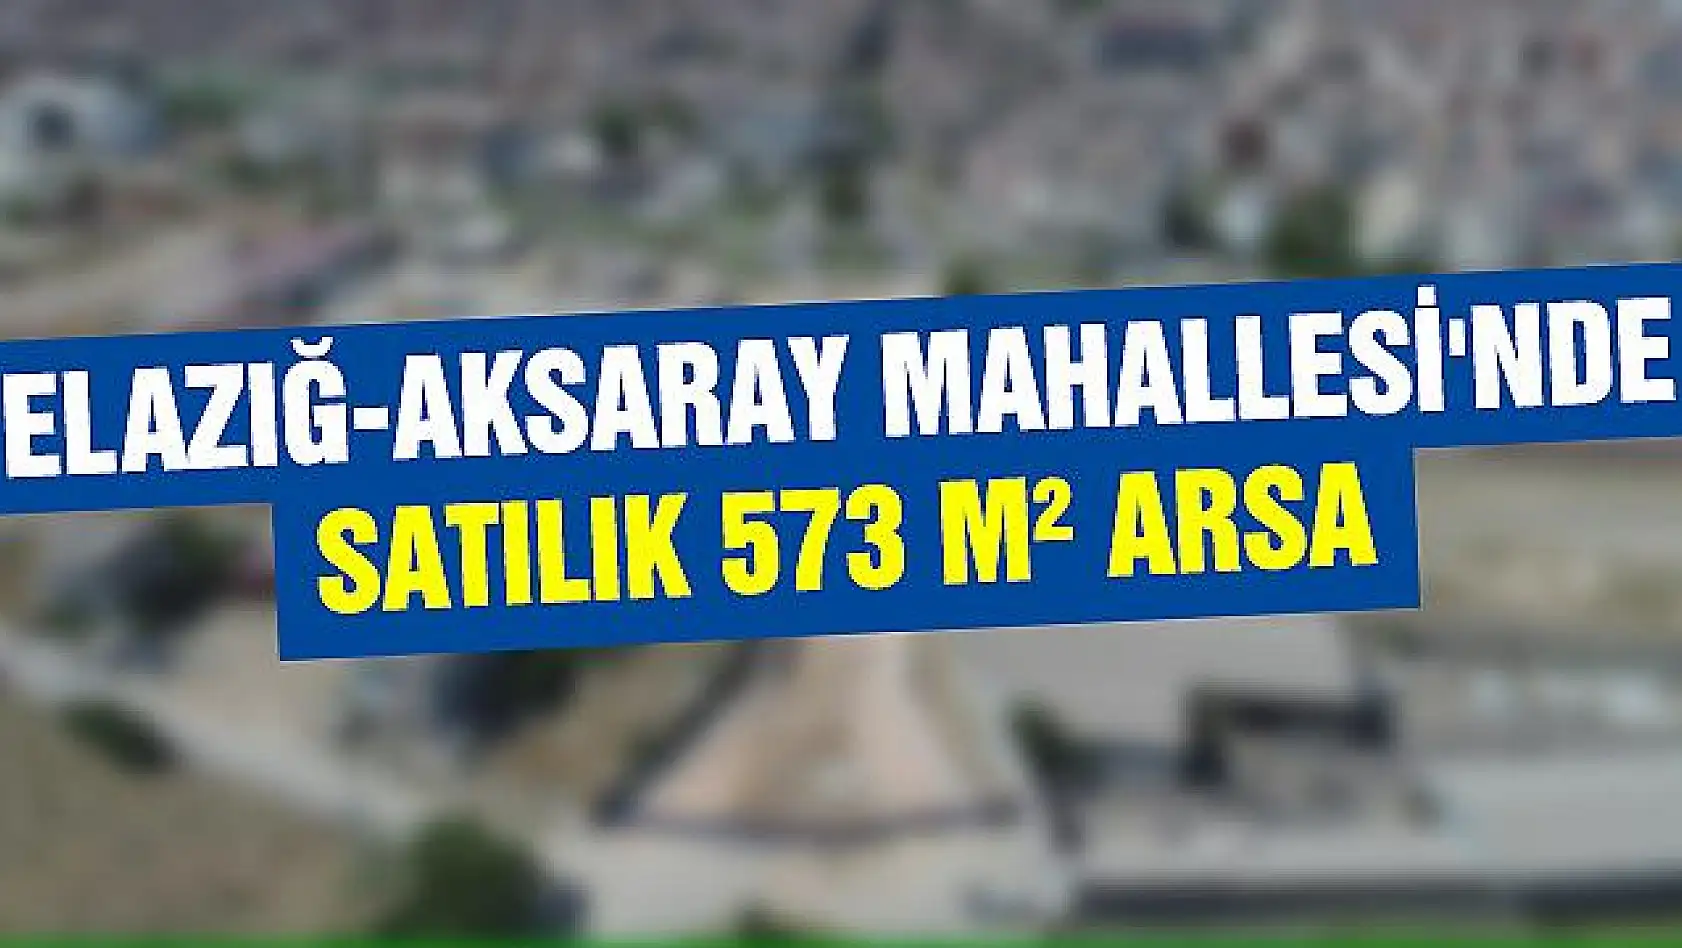 Elazığ-Aksaray Mahallesi'nde satılık 573 m² arsa